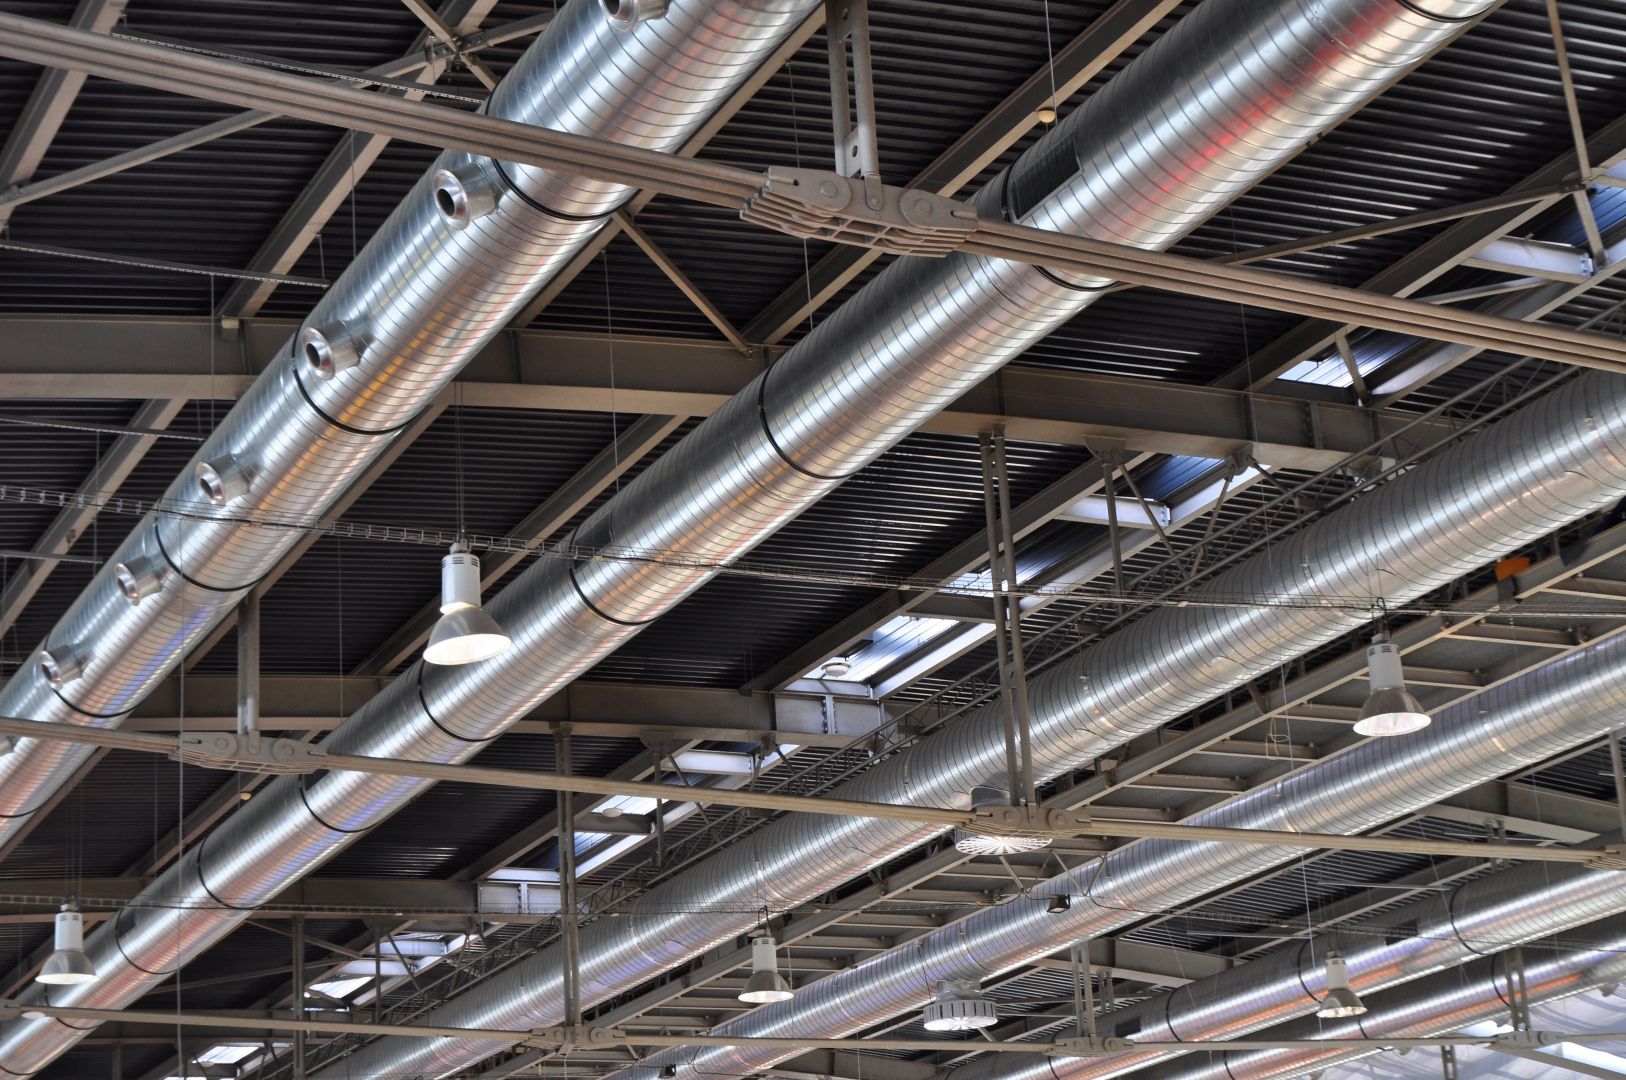 Poptávka na realizaci železobetonového stropu z pohledového betonu (Stropy) - Chrudim